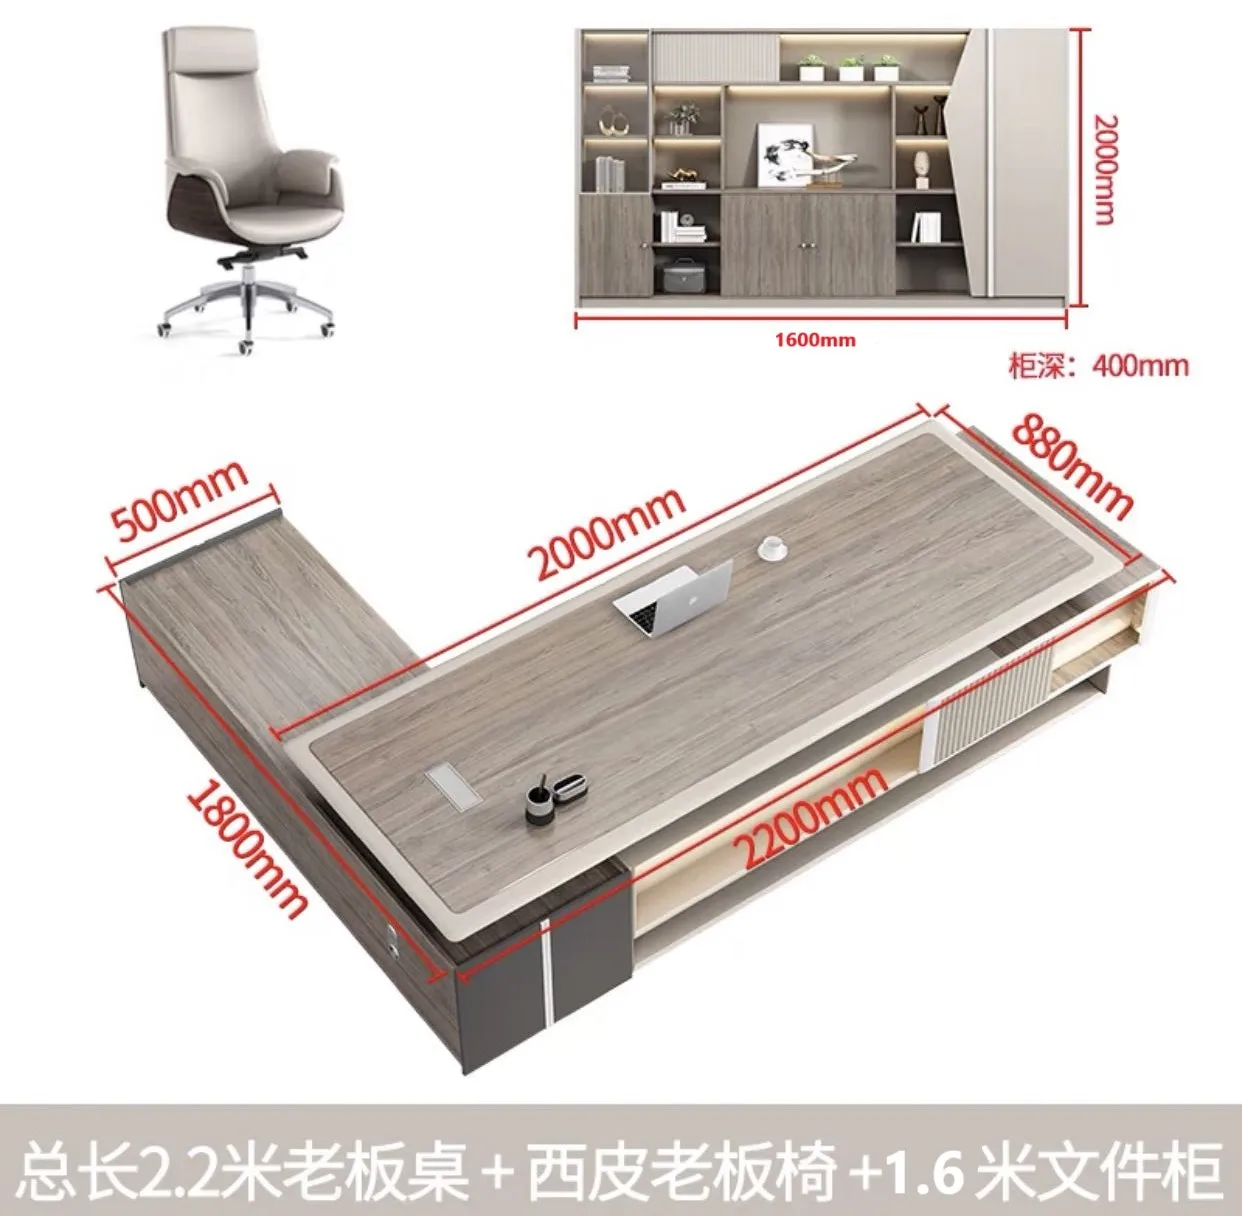 Письменный стол босса, роскошный простой современный большой письменный стол, офисная мебель, комбинация стола менеджера и стула